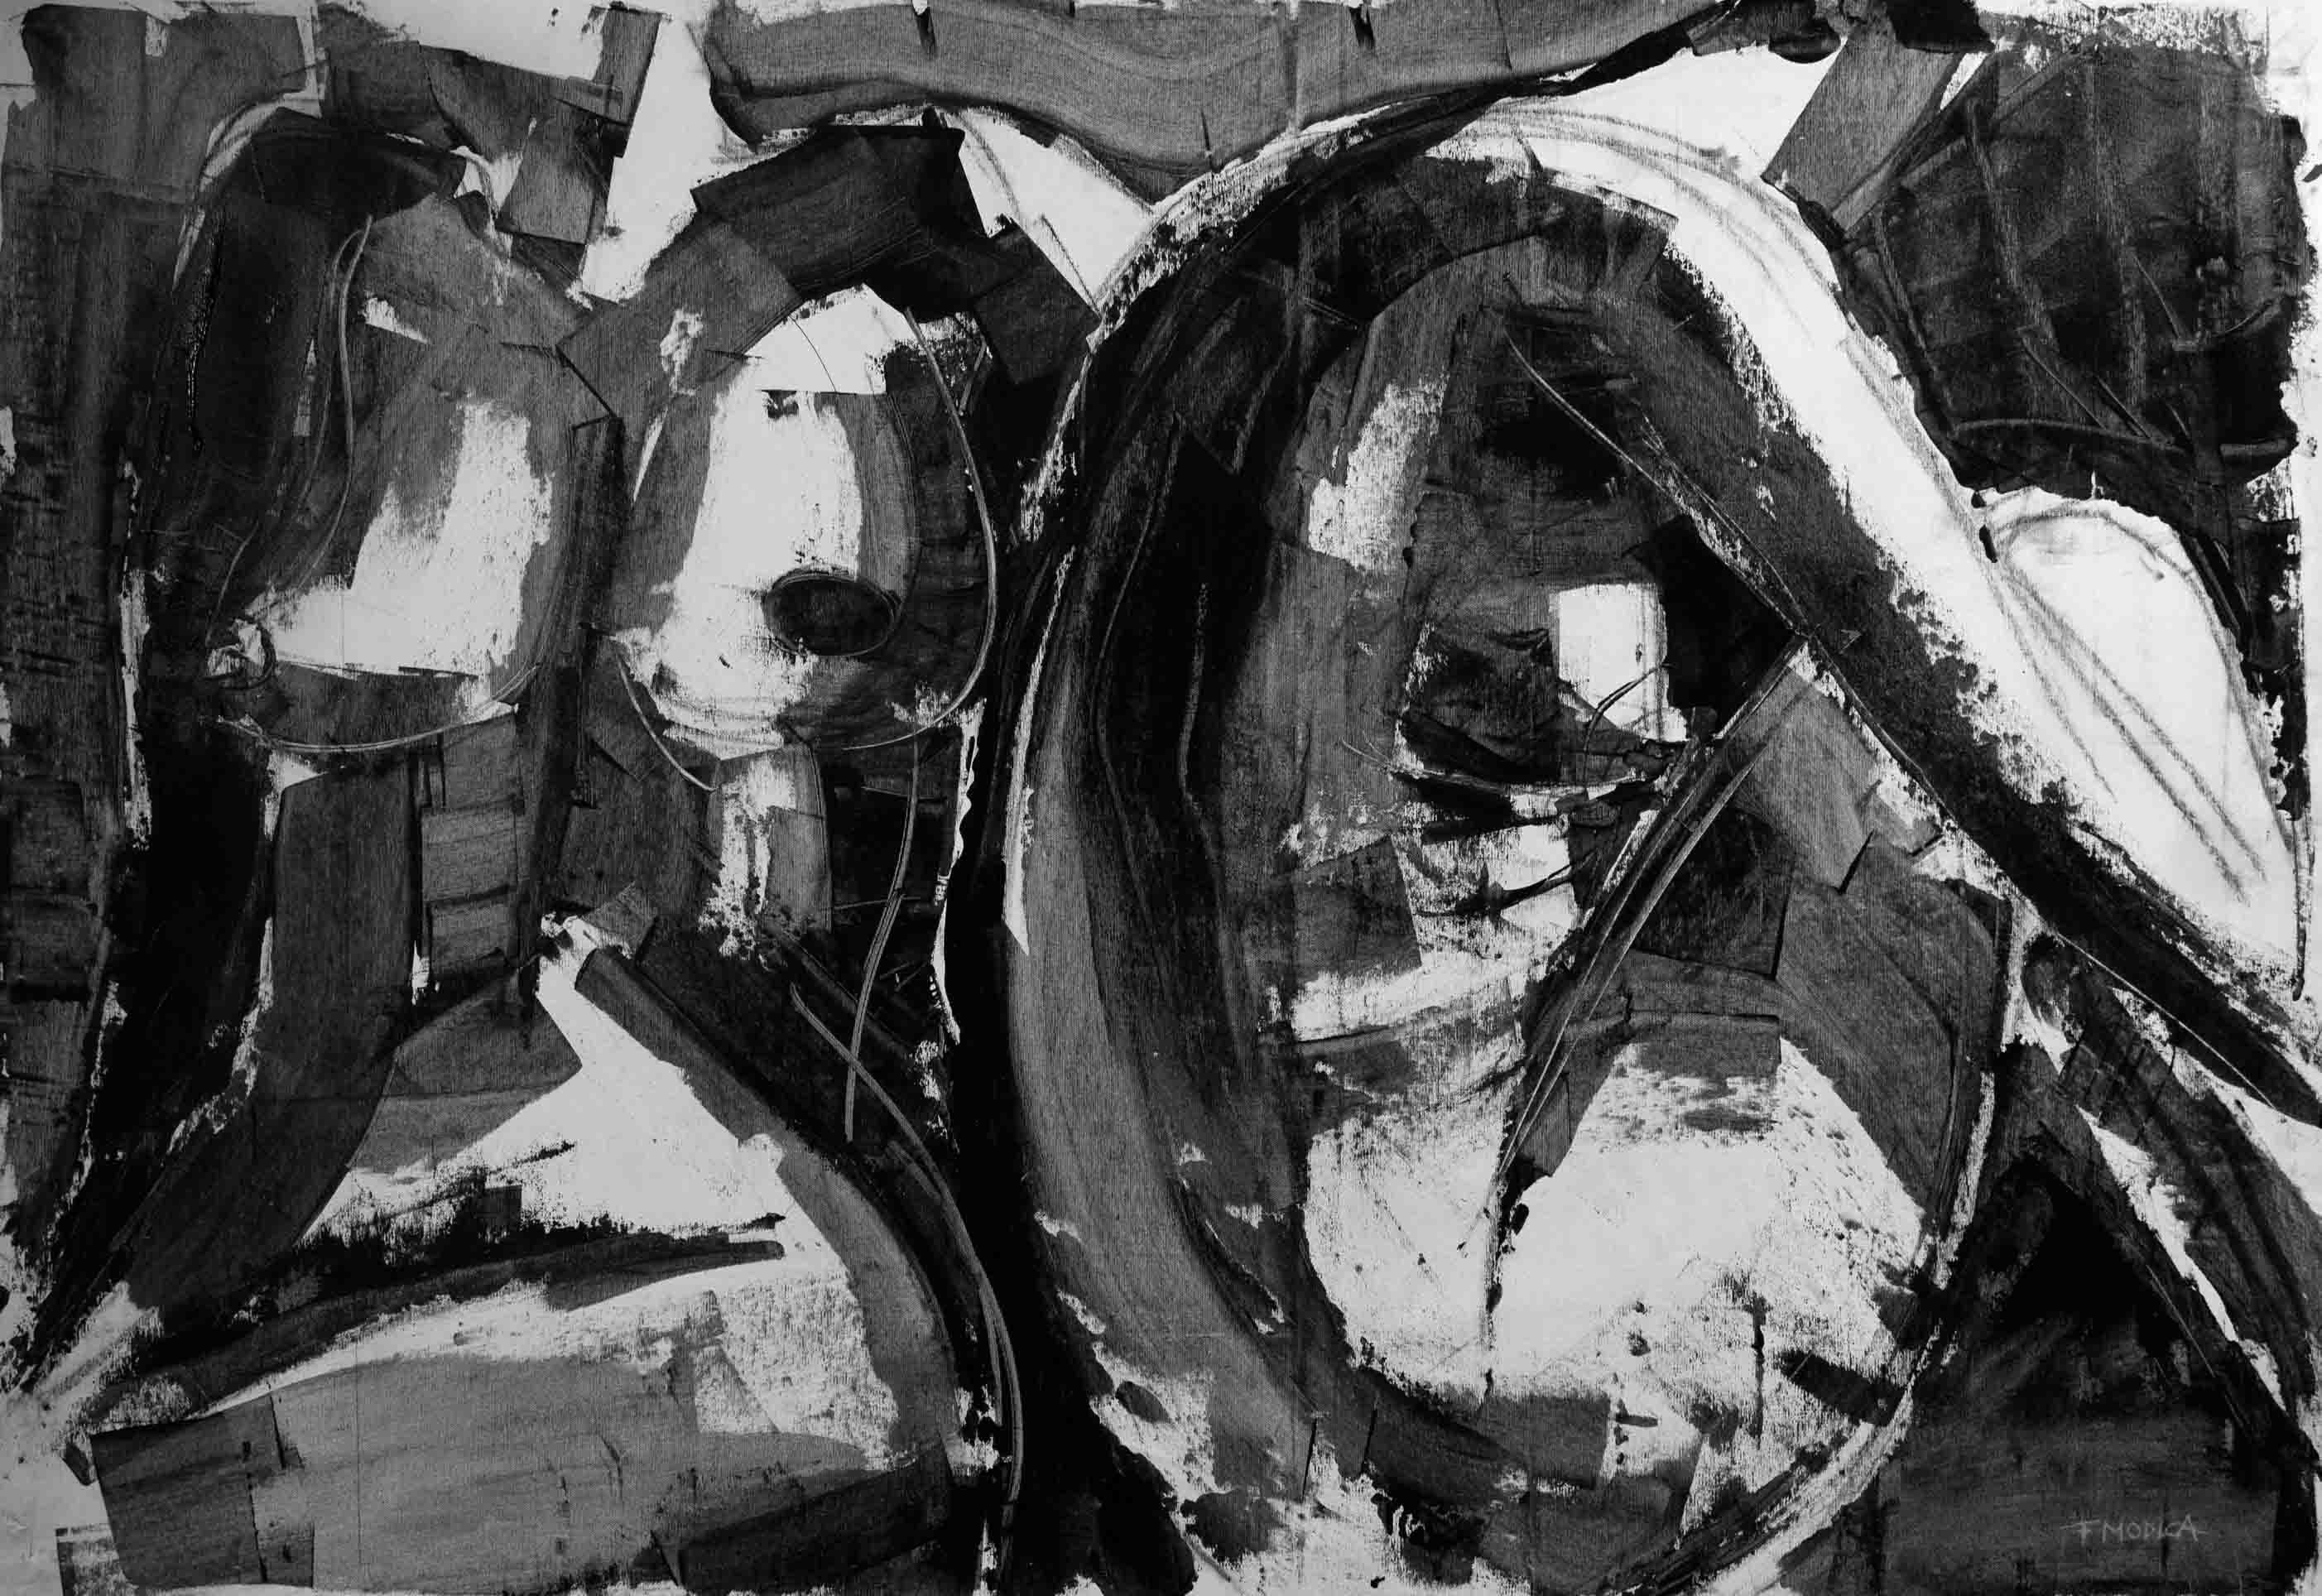 Fabio Modica | Gemini - mixed media on canvas - cm 150x106 | 59x42 inches - 2014 | Aberson Exhibits - Tulsa - OK